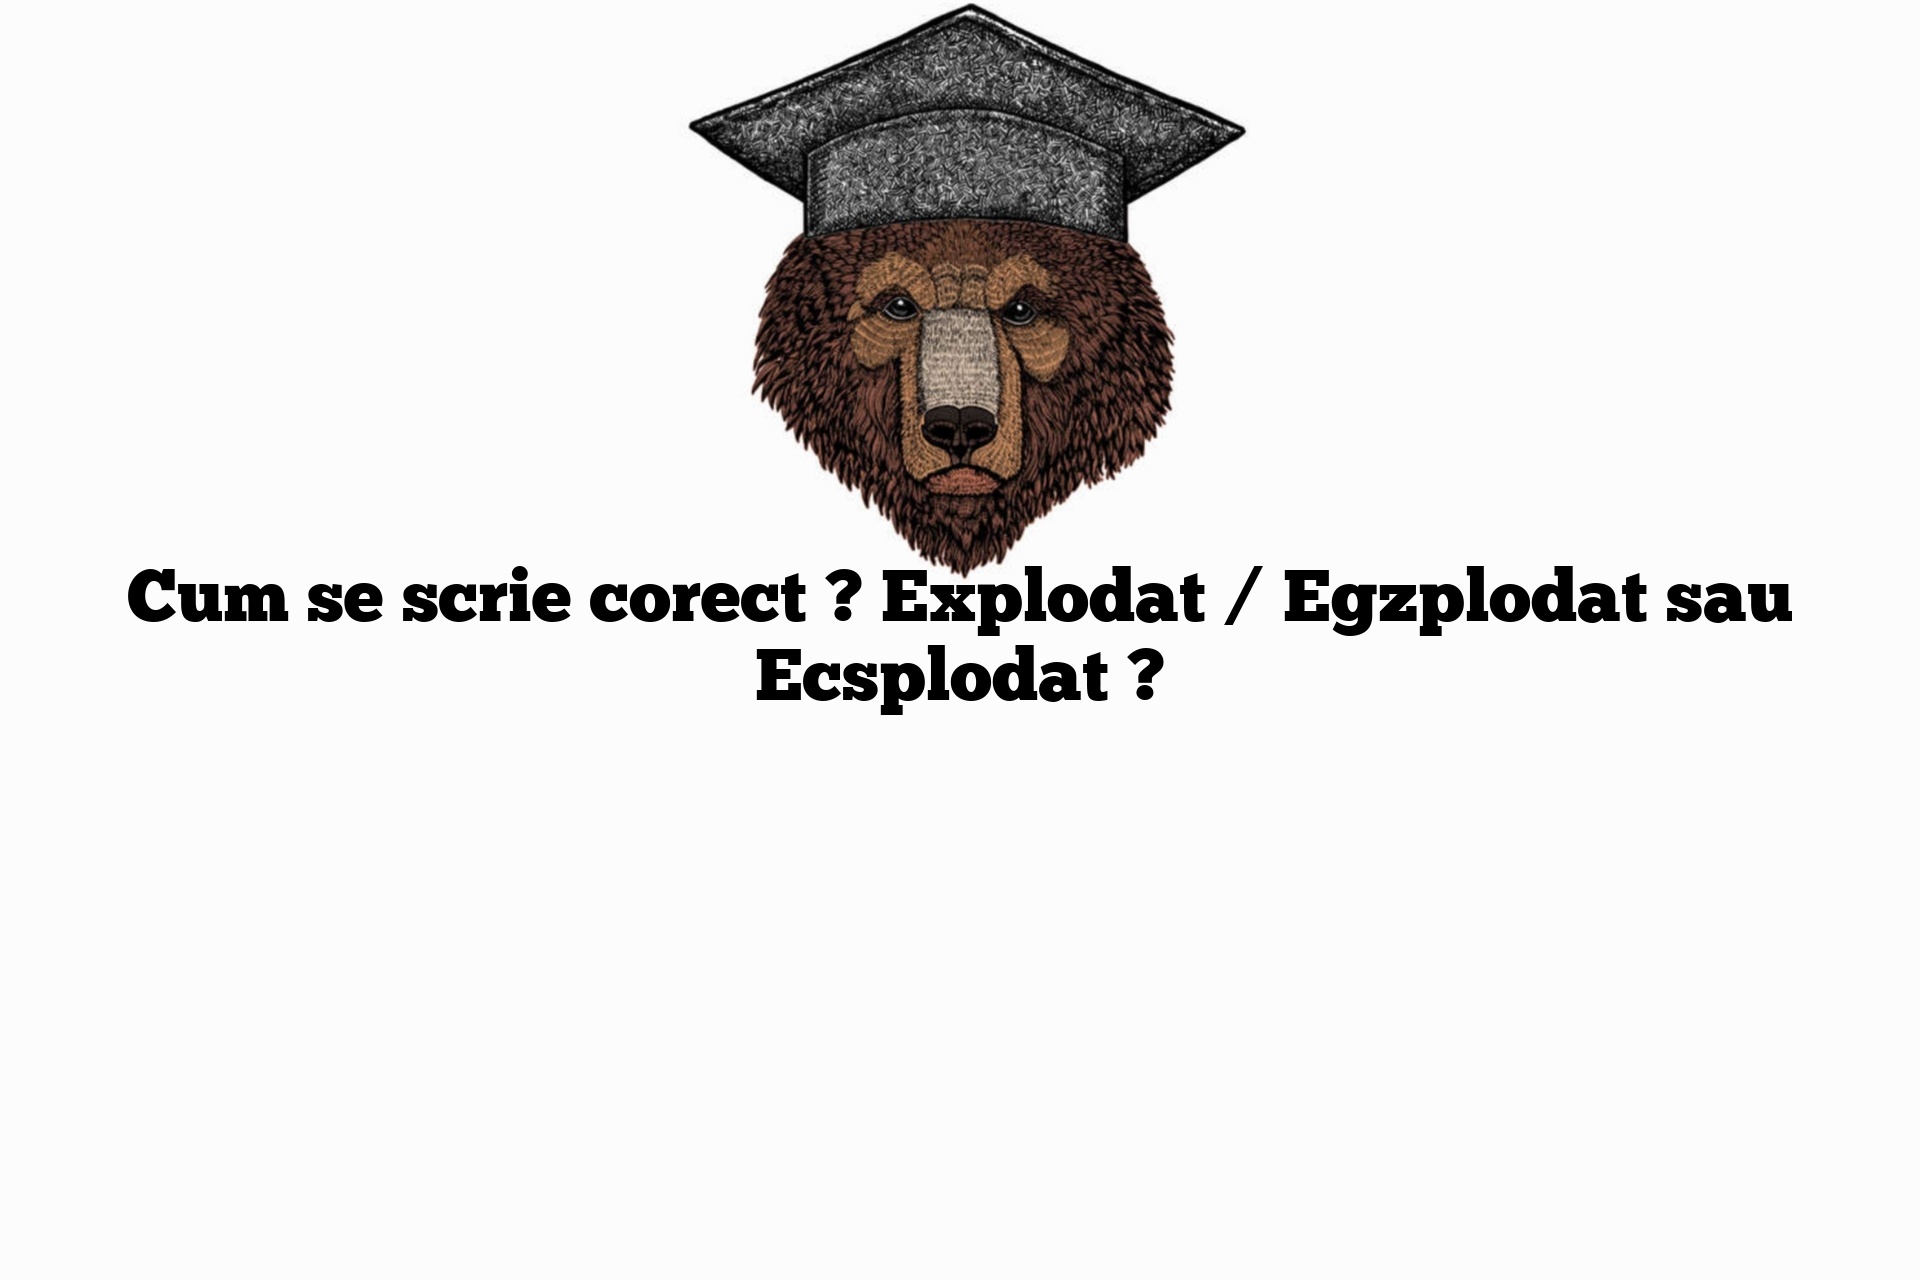 Cum se scrie corect ? Explodat / Egzplodat sau Ecsplodat ?